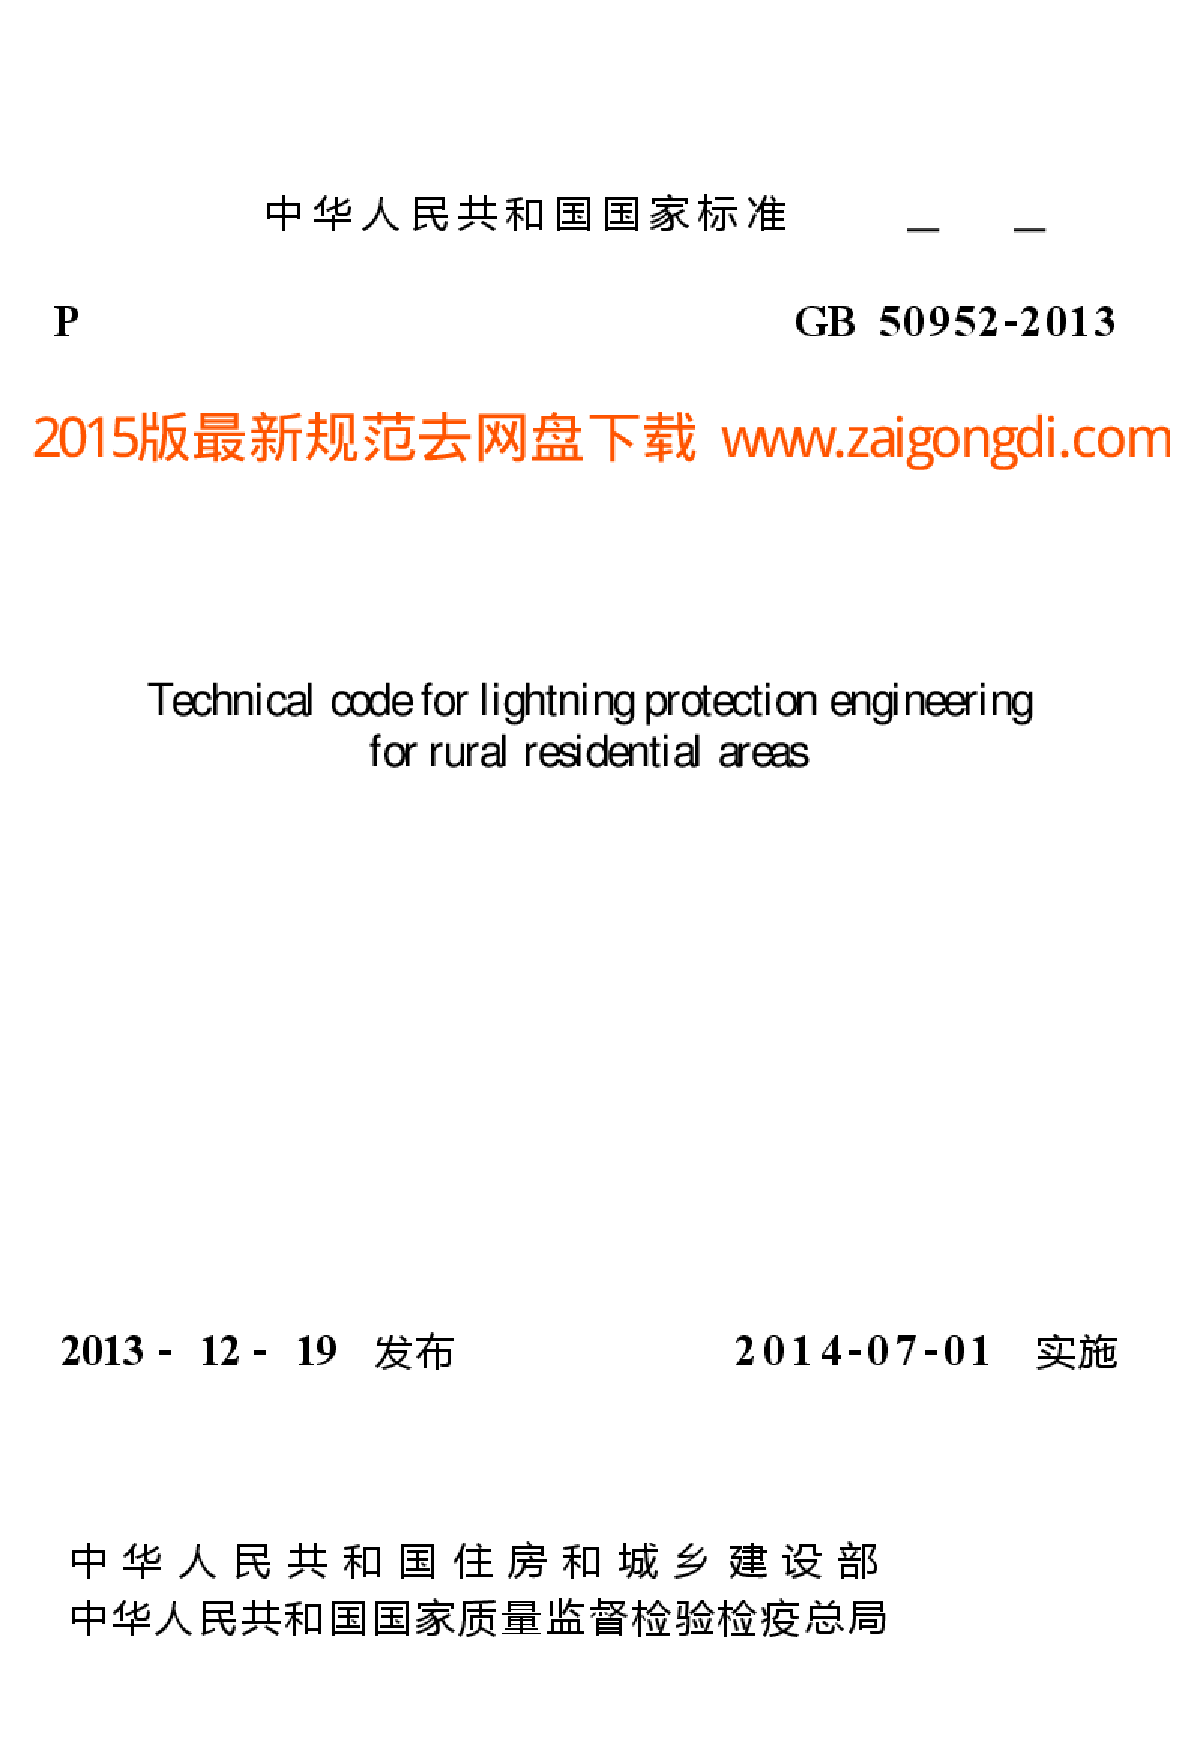 GB 50952-2013 农村民居雷电防护工程技术规范